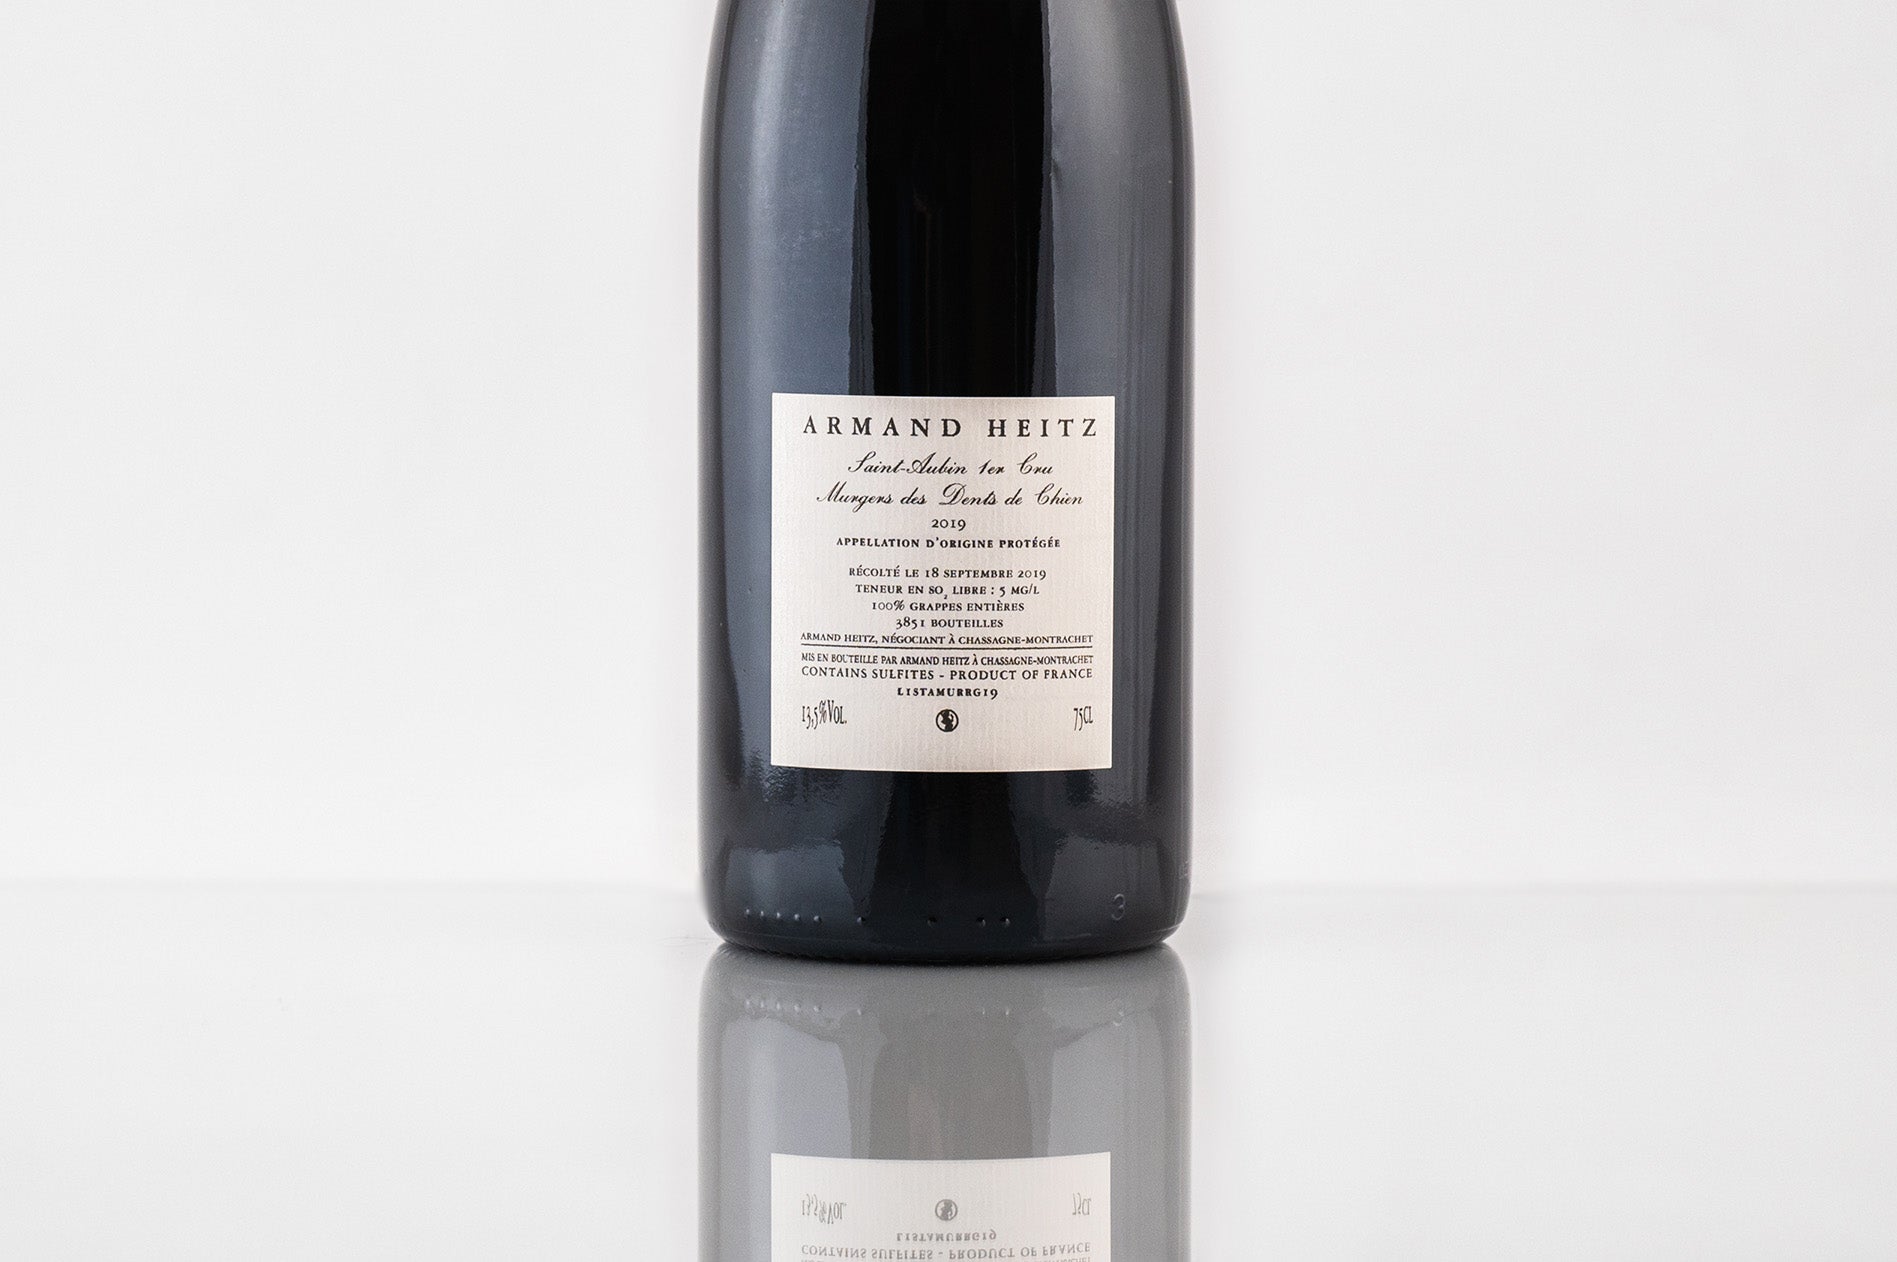 Saint-Aubin 1er Cru Murgers des Dents de Chien, Pinot noir, 2019, Armand Heitz, contre étiquette